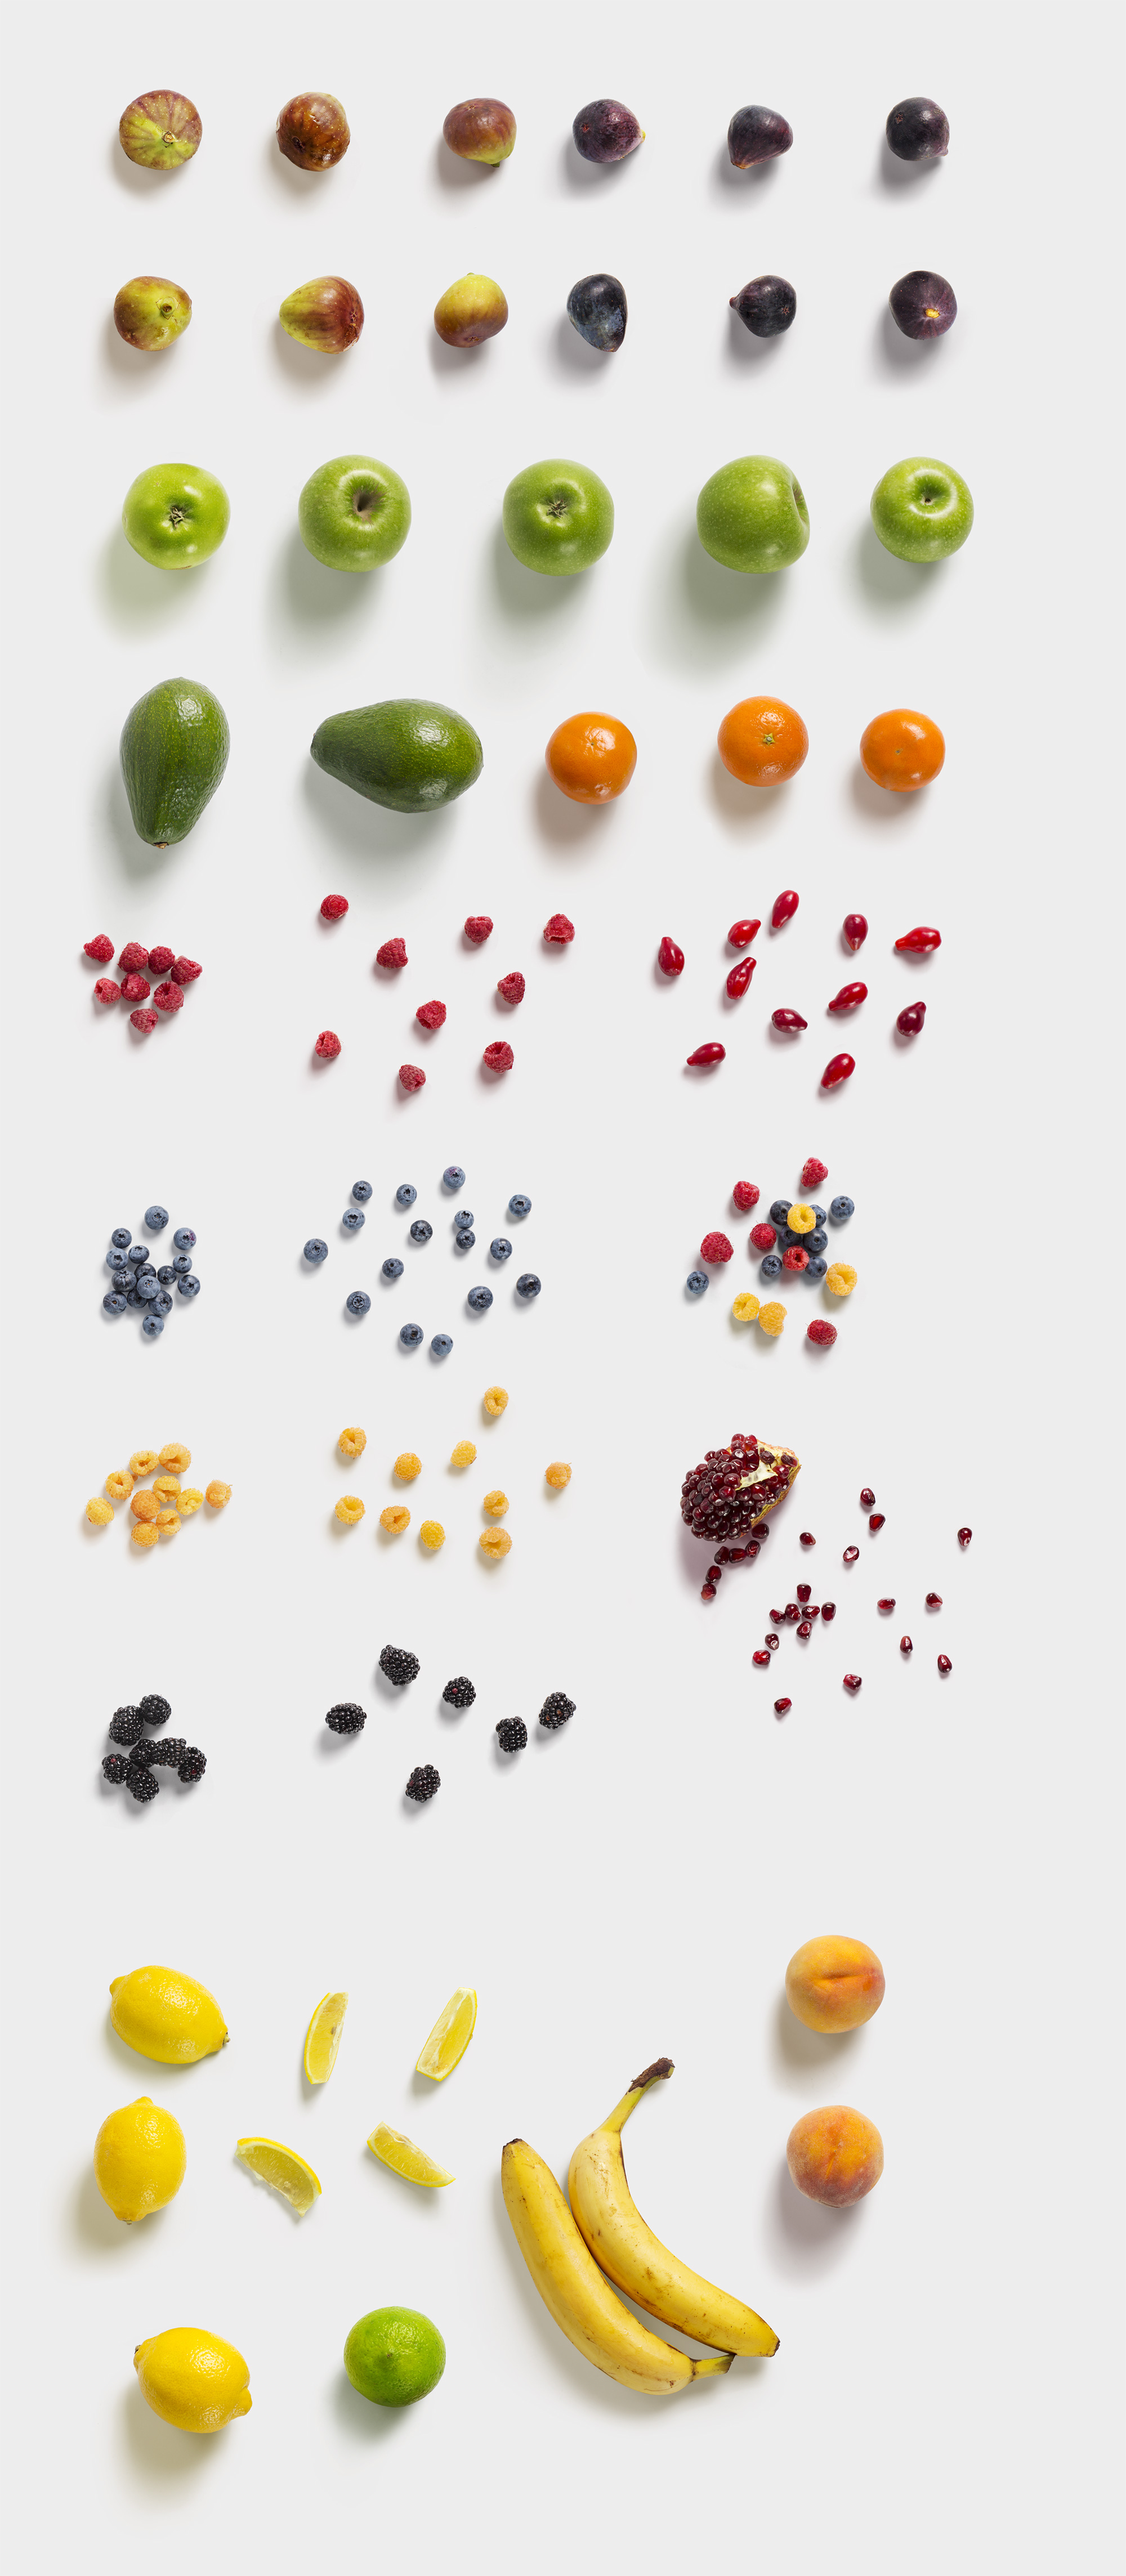 海量蔬菜水果高清实物照片样机素材Fruits and Vegetables插图(12)